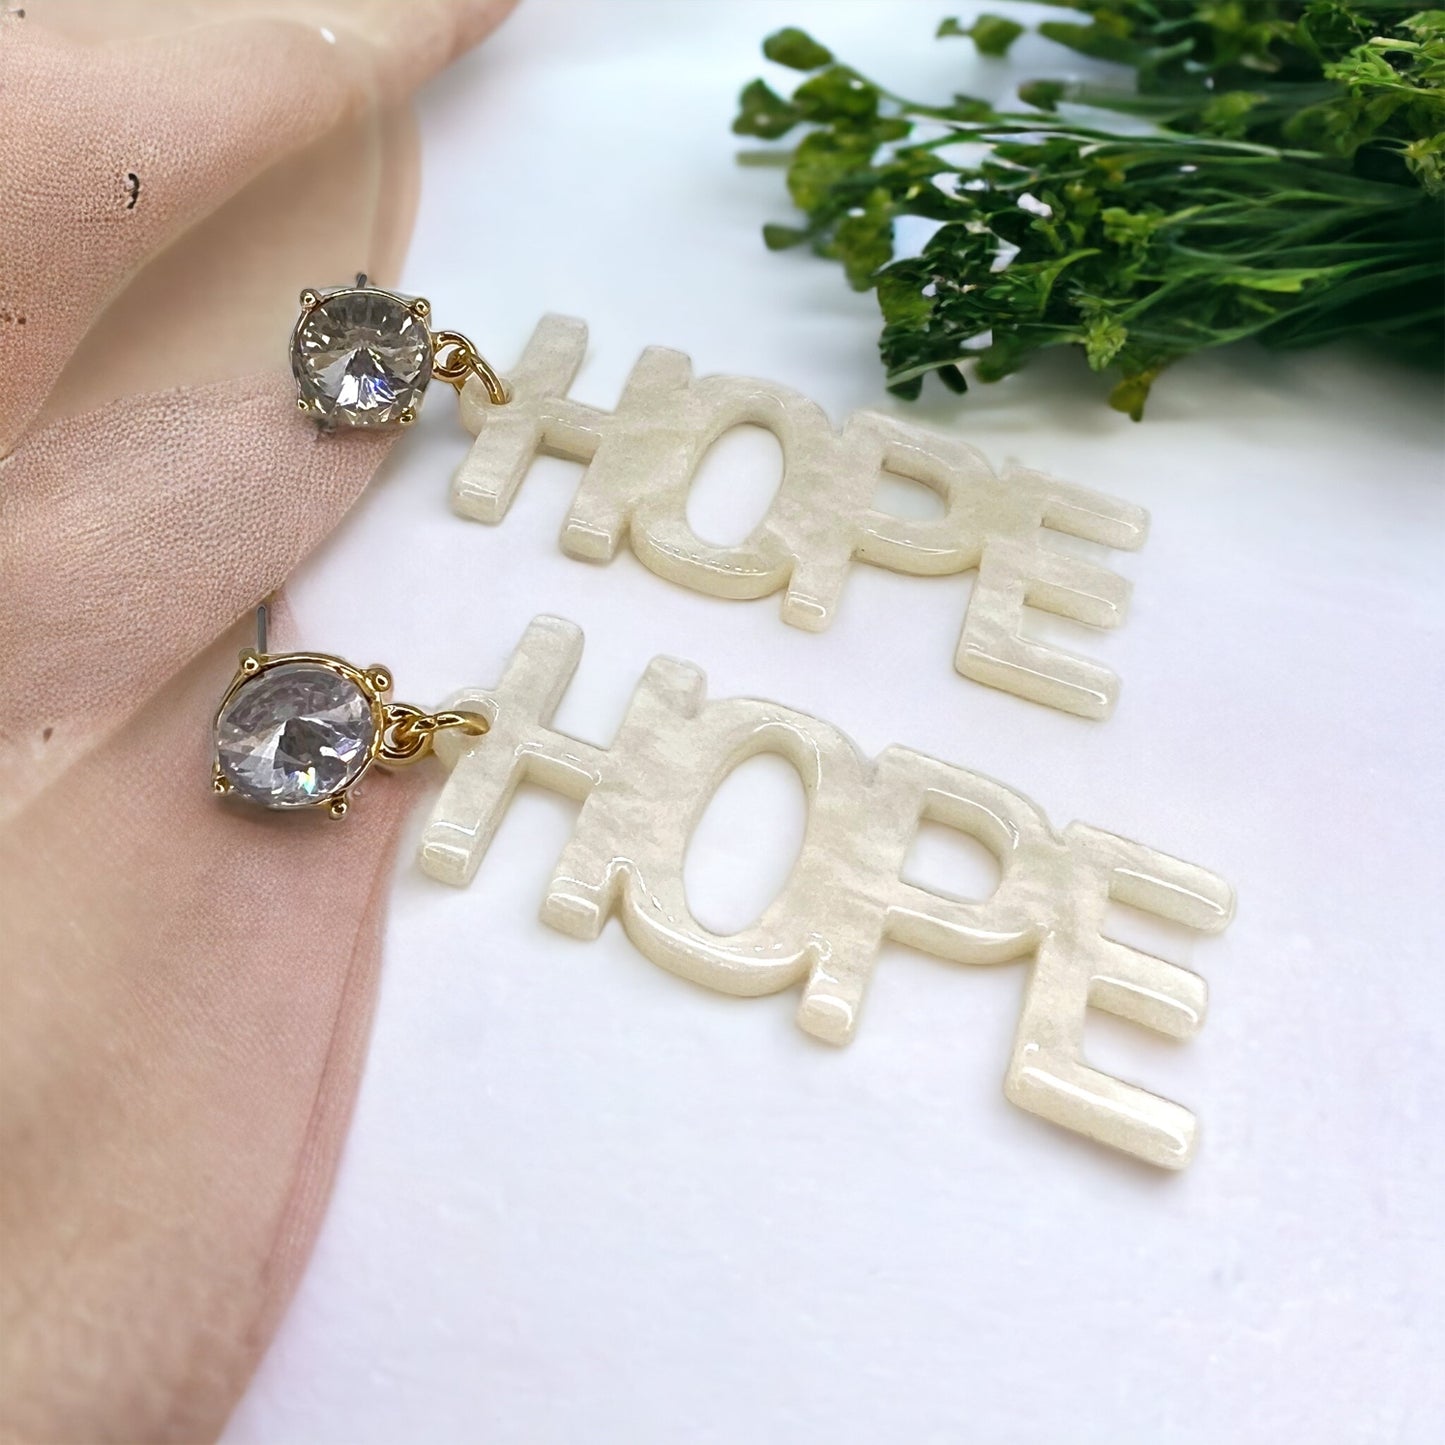 Hope Earrings - Inspirational Earrings, Handmade Earrings, White Earrings, Motivational Gift